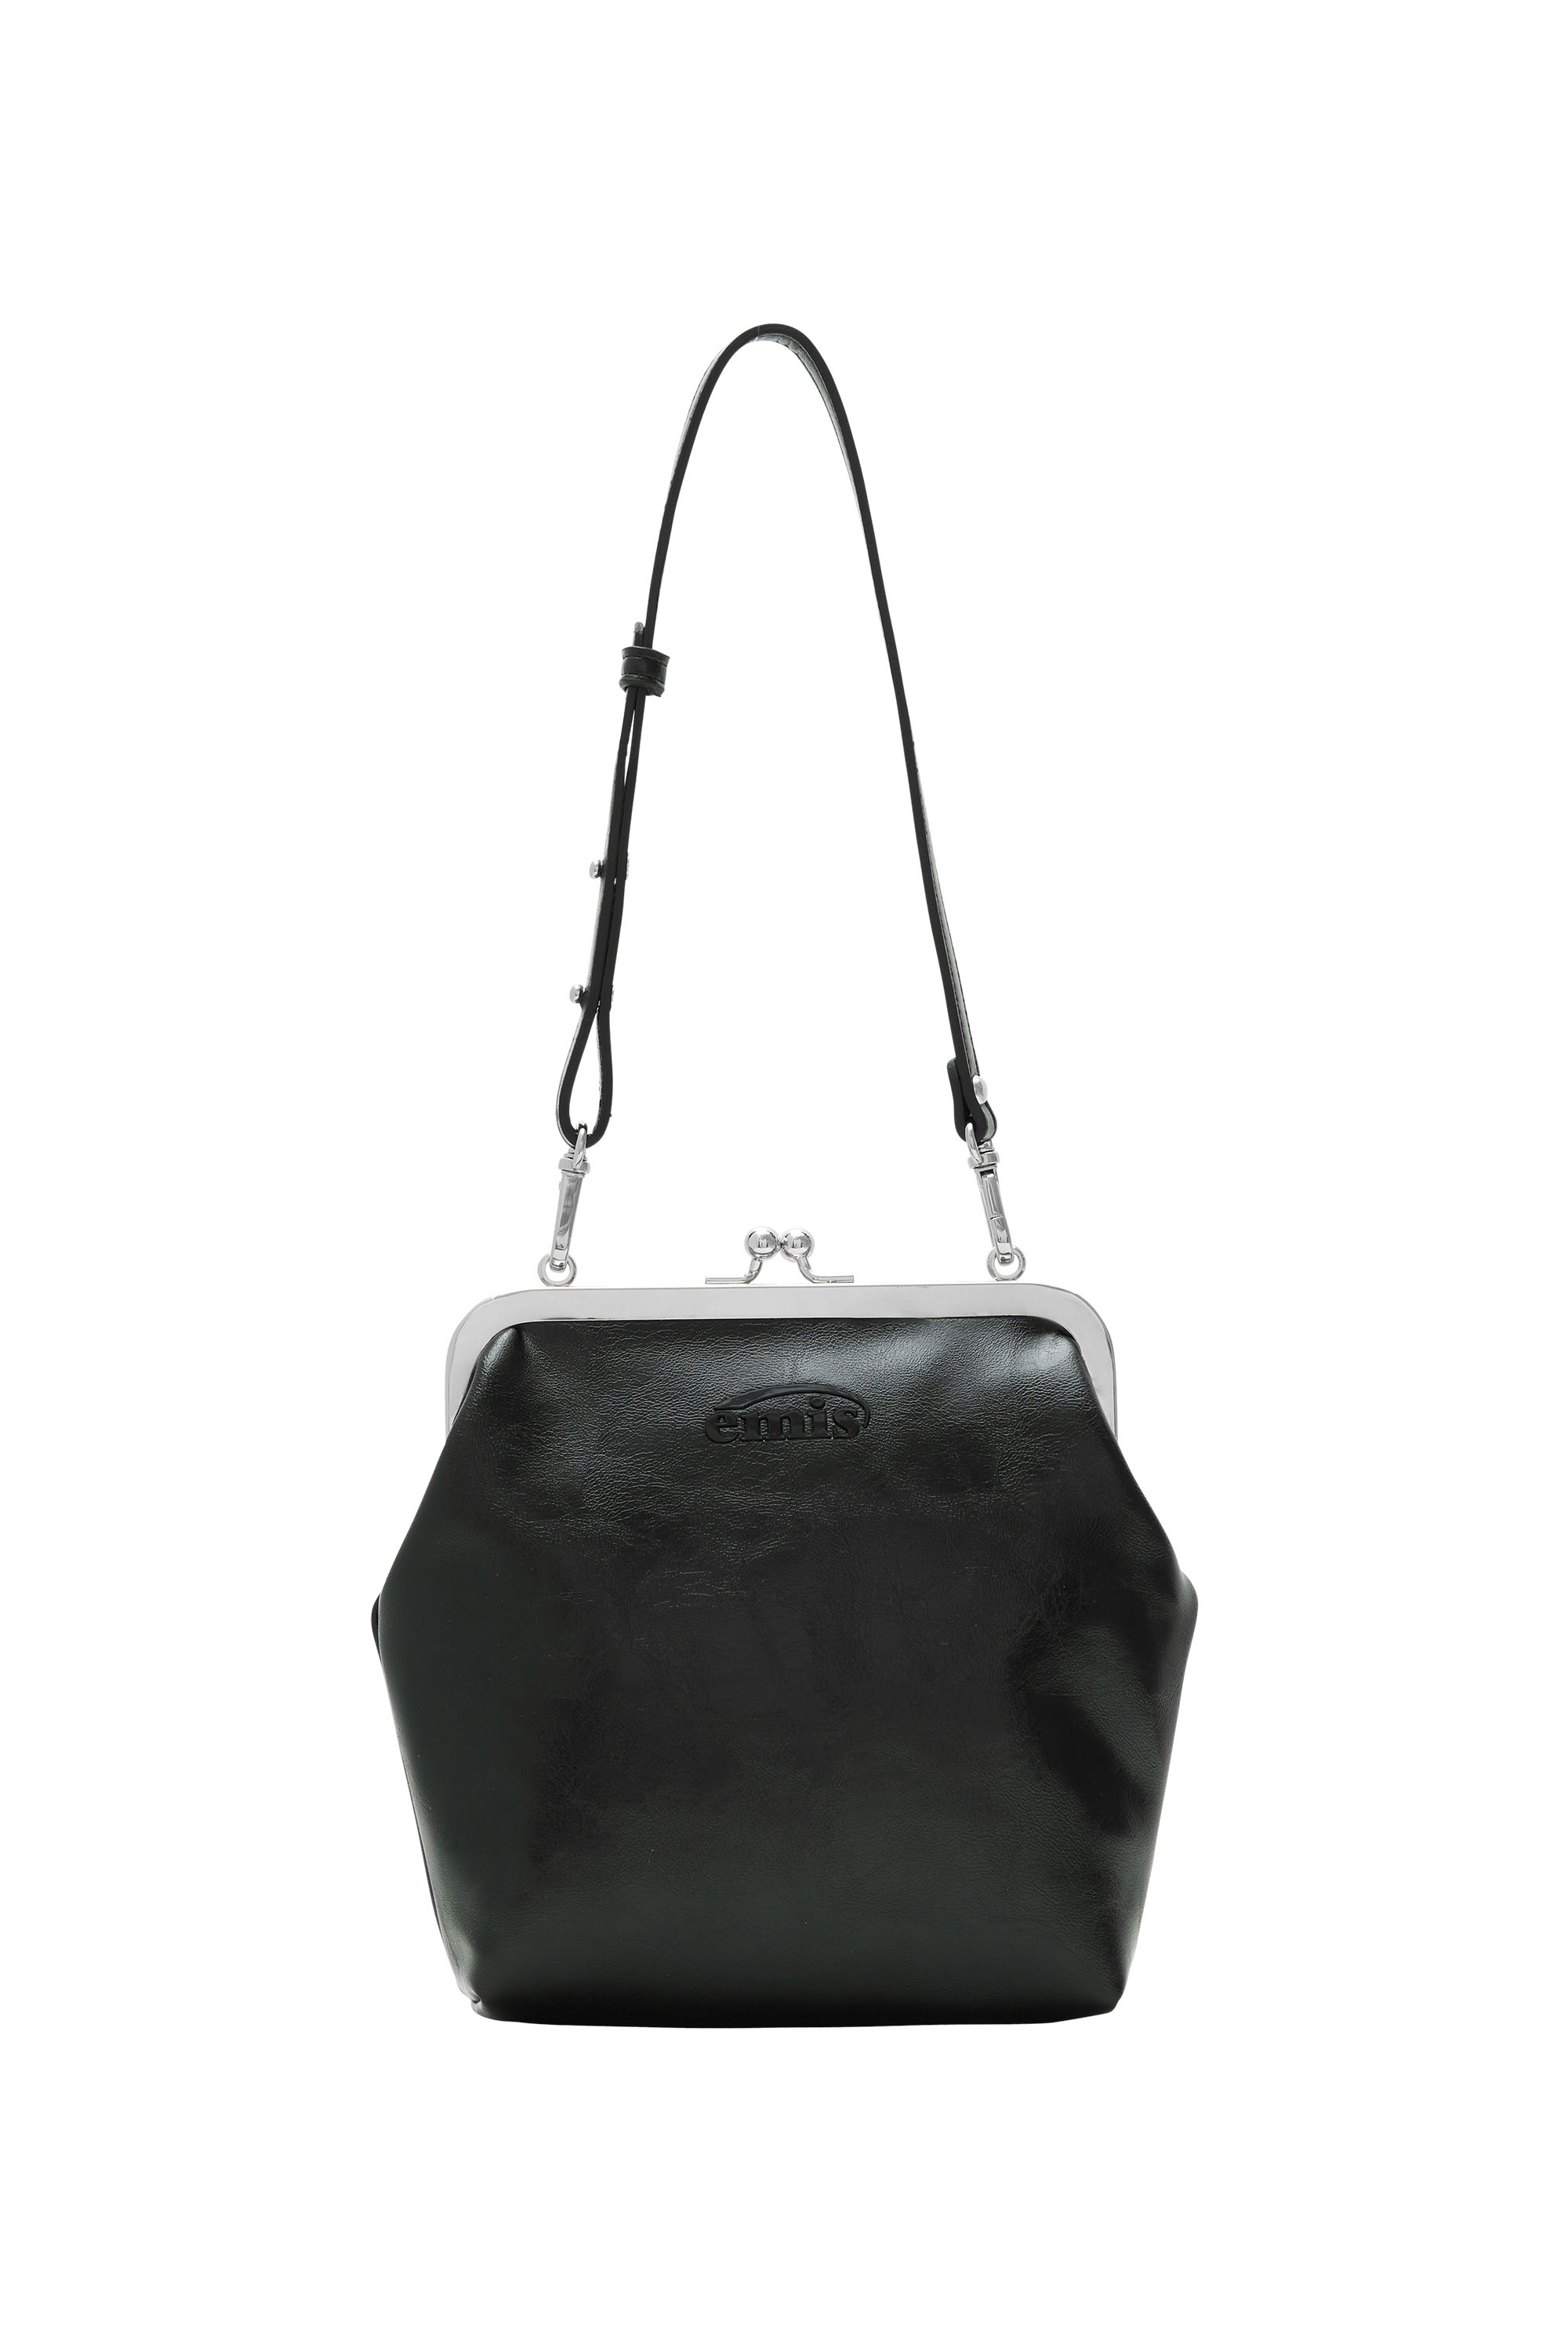 韓國EMIS - FRAME PURSE BAG-BLACK 框架皮夾包-黑色